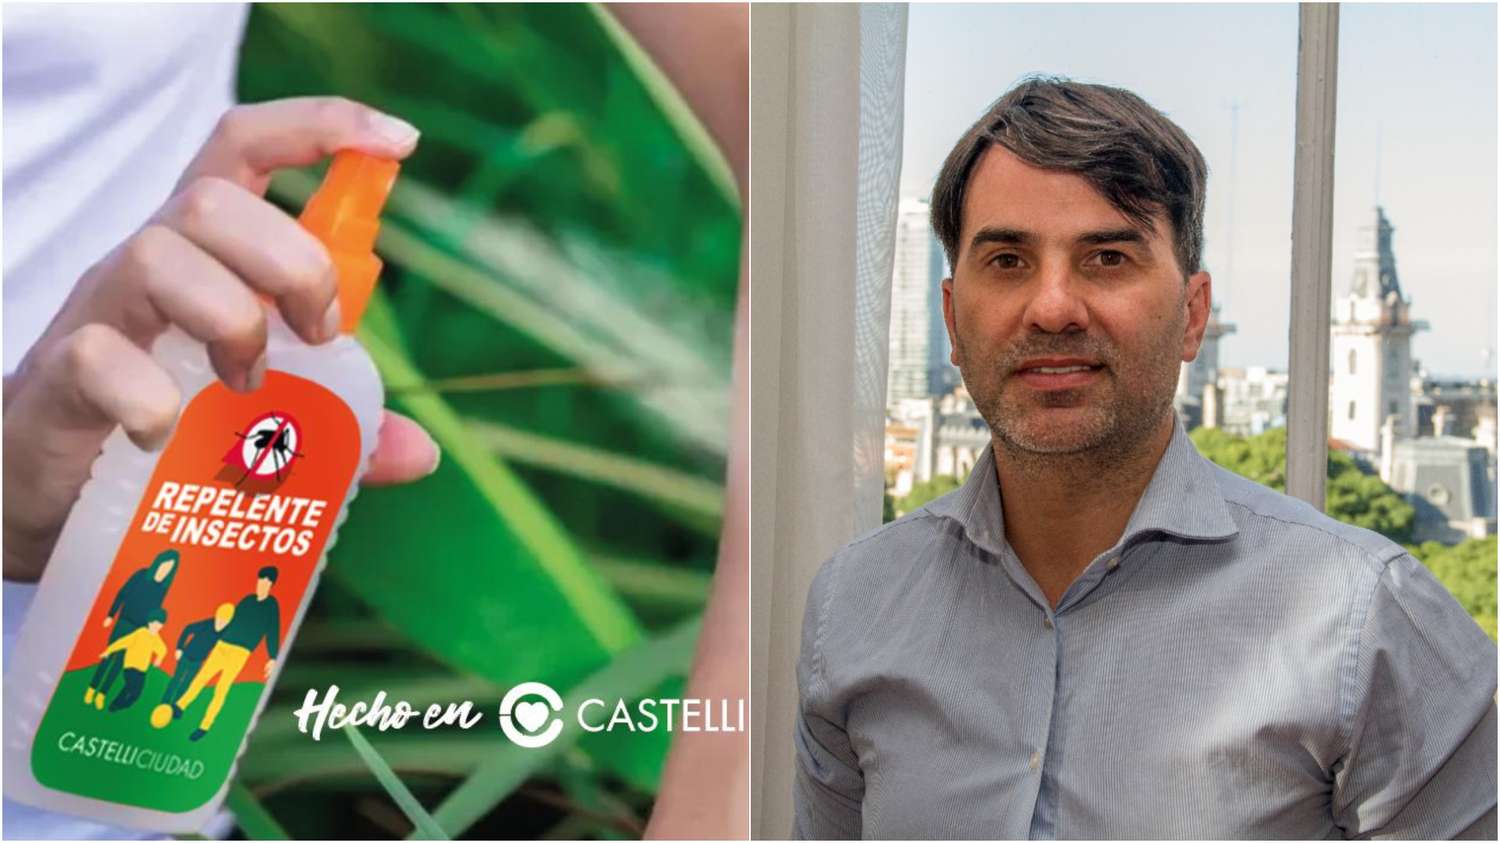 Echarren anunció la producción de repelente en laboratorio del Hospital de Castelli: "Vamos a cuidar a nuestros vecinos"